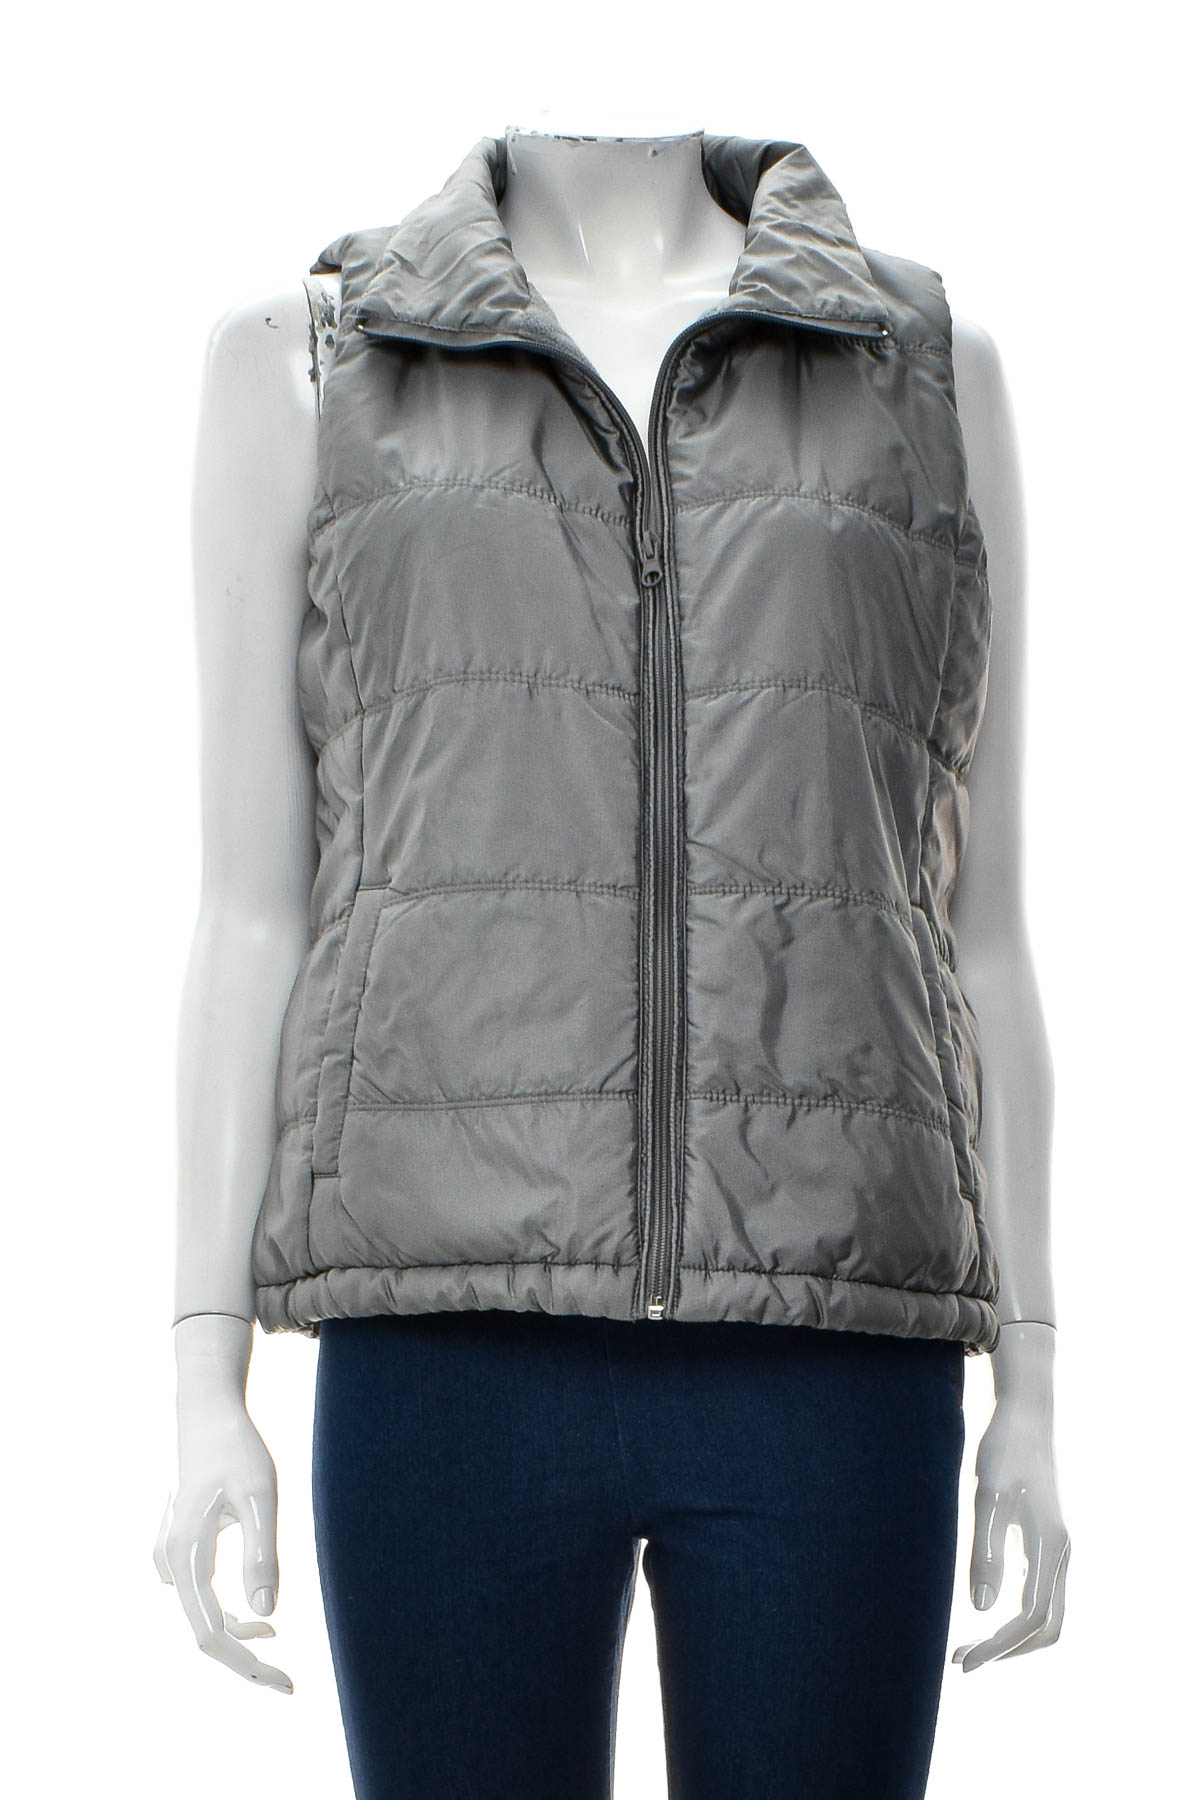 Women's vest - New York & Company - 0